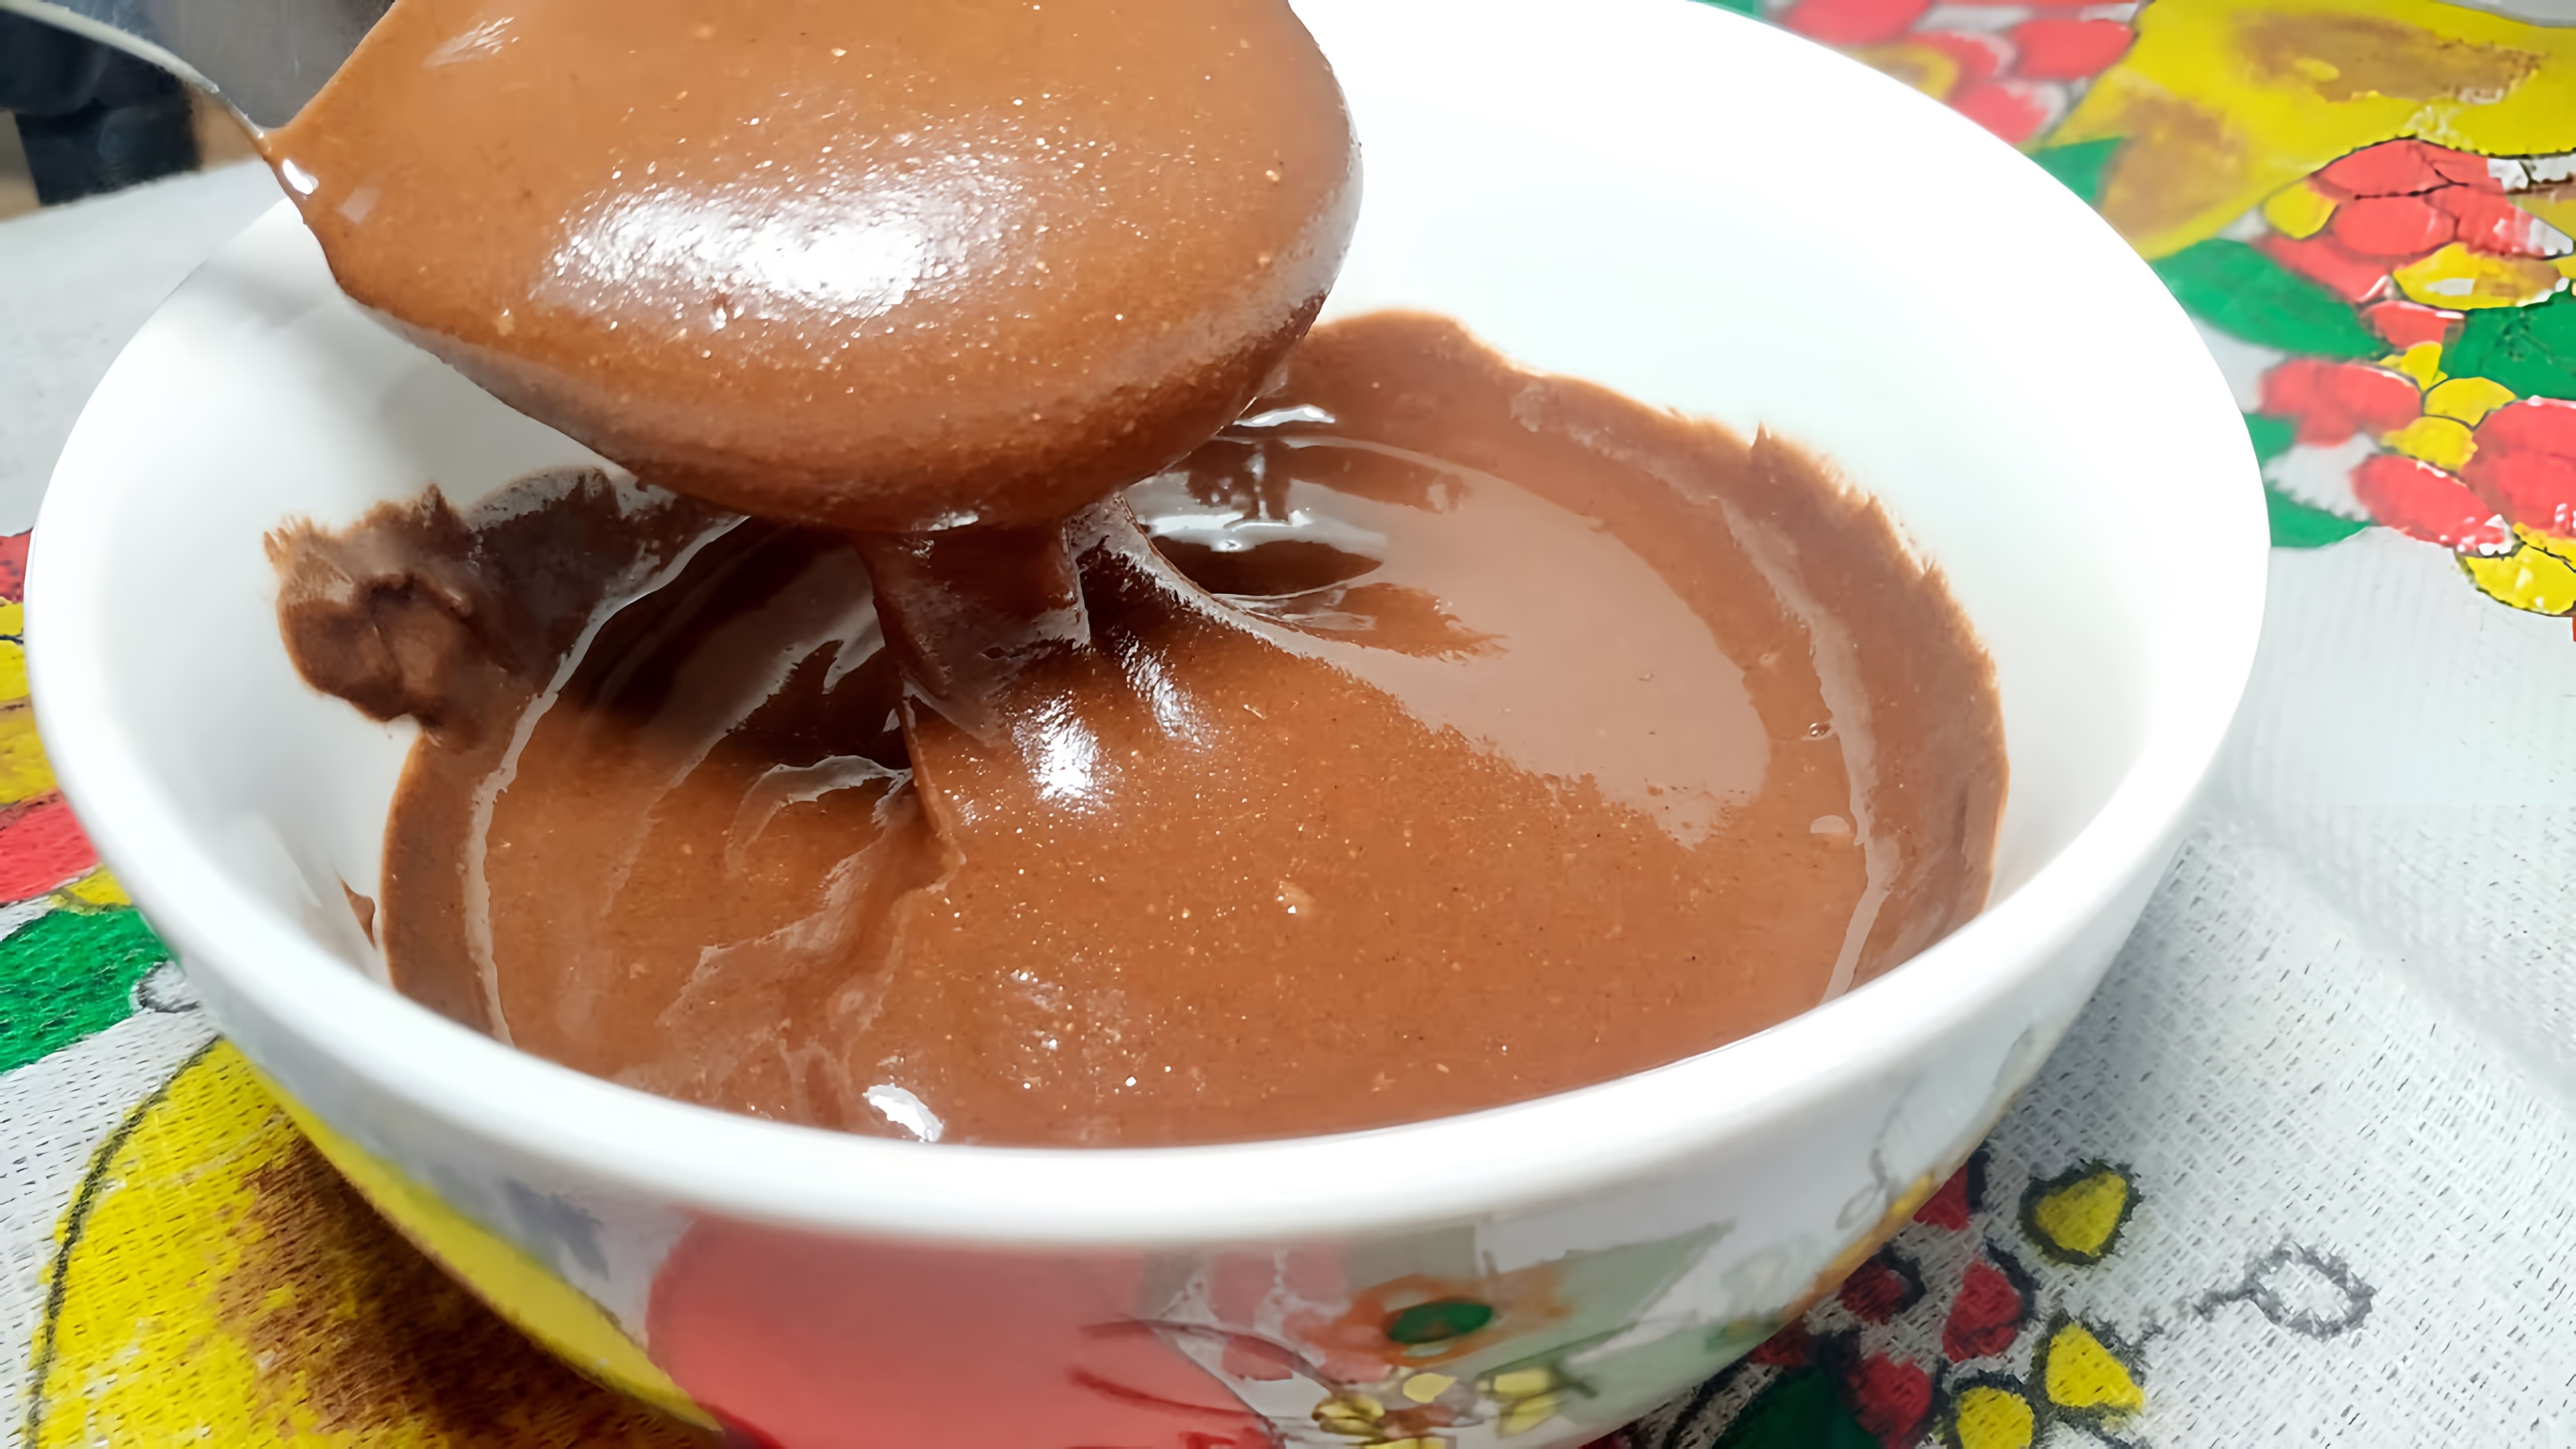 Шоколадная Паста - это вкусное и полезное лакомство, которое можно приготовить самостоятельно